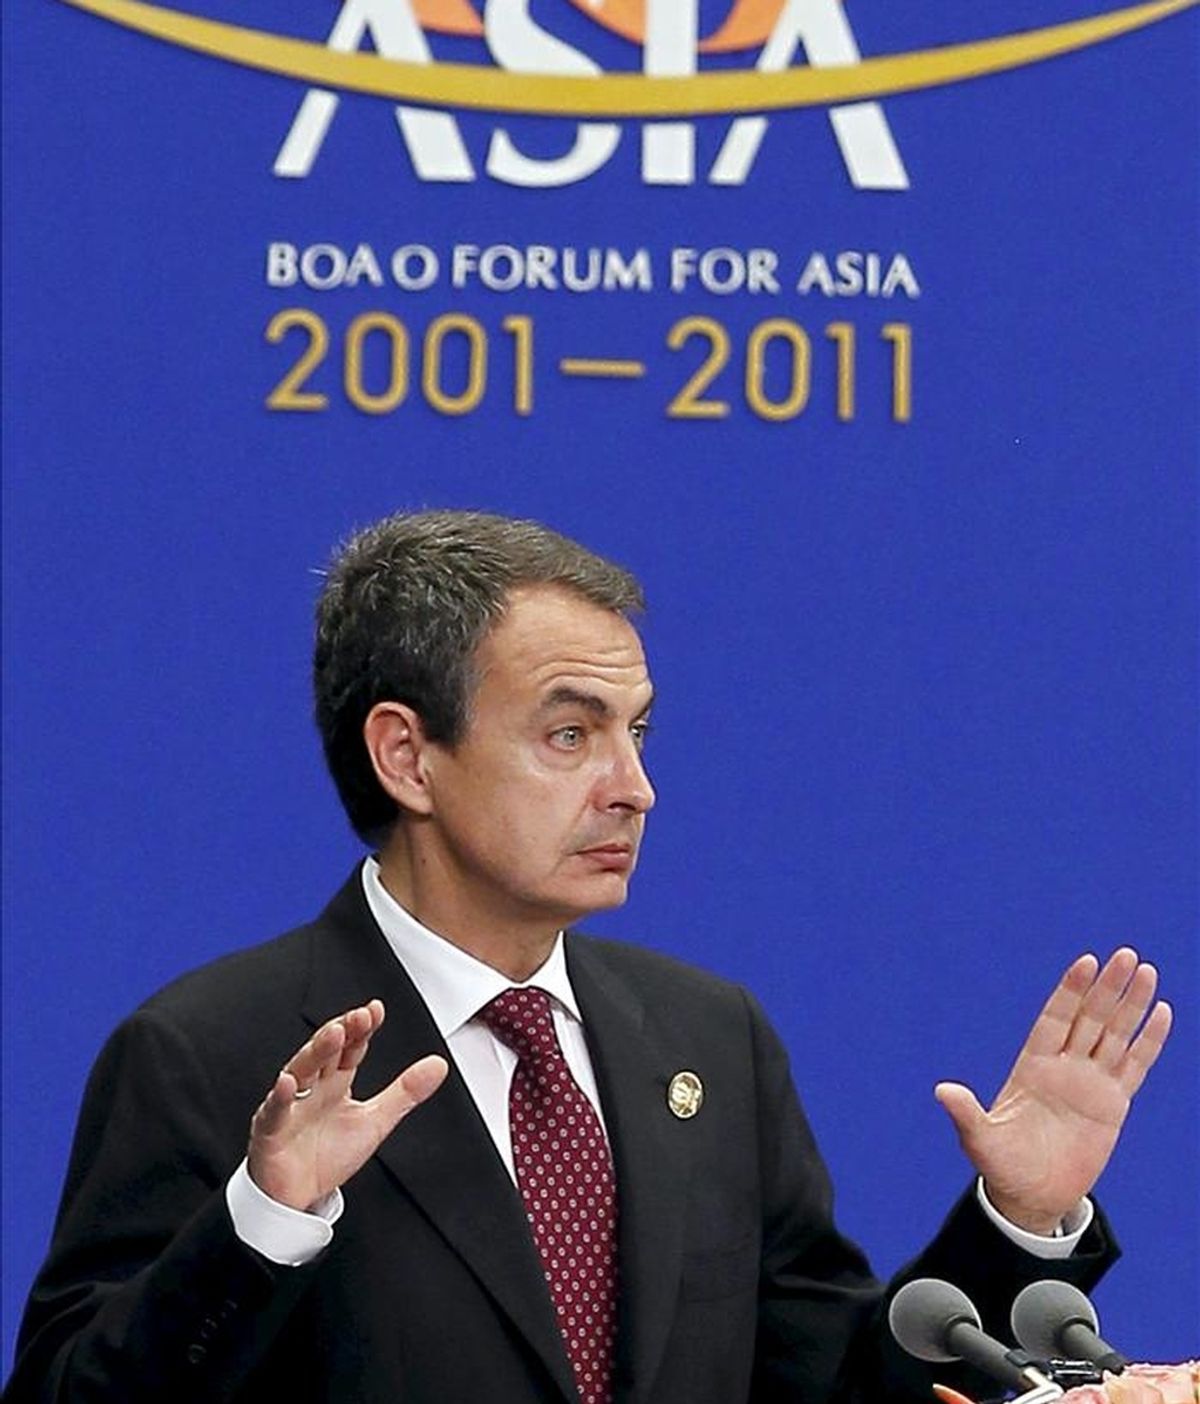 El presidente del Gobierno español, José Luis Rodríguez Zapatero, durante su discurso en la inauguración hoy del Foro de Boao, considerado el Davos asiático, que se celebra en la turística isla de Hainan (China) y en el que Zapatero es el único líder europeo invitado. EFE